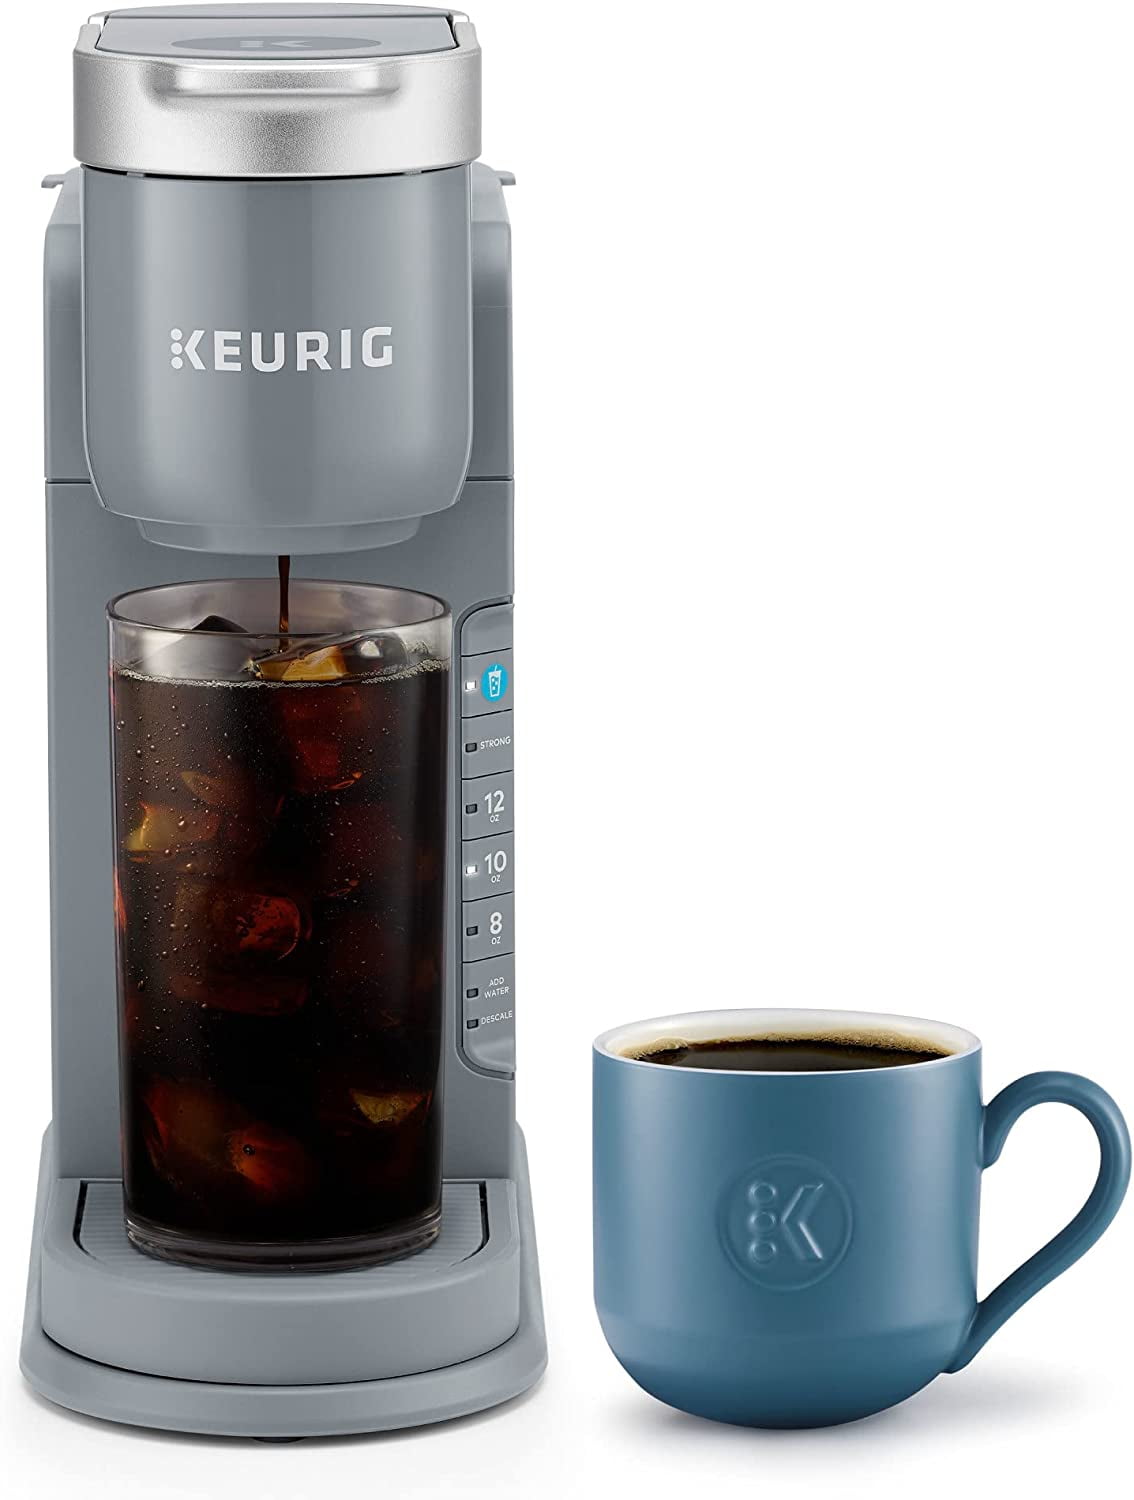 Keurig® K-Iced Coffee Brewer, 1 ct - Fry's Food Stores